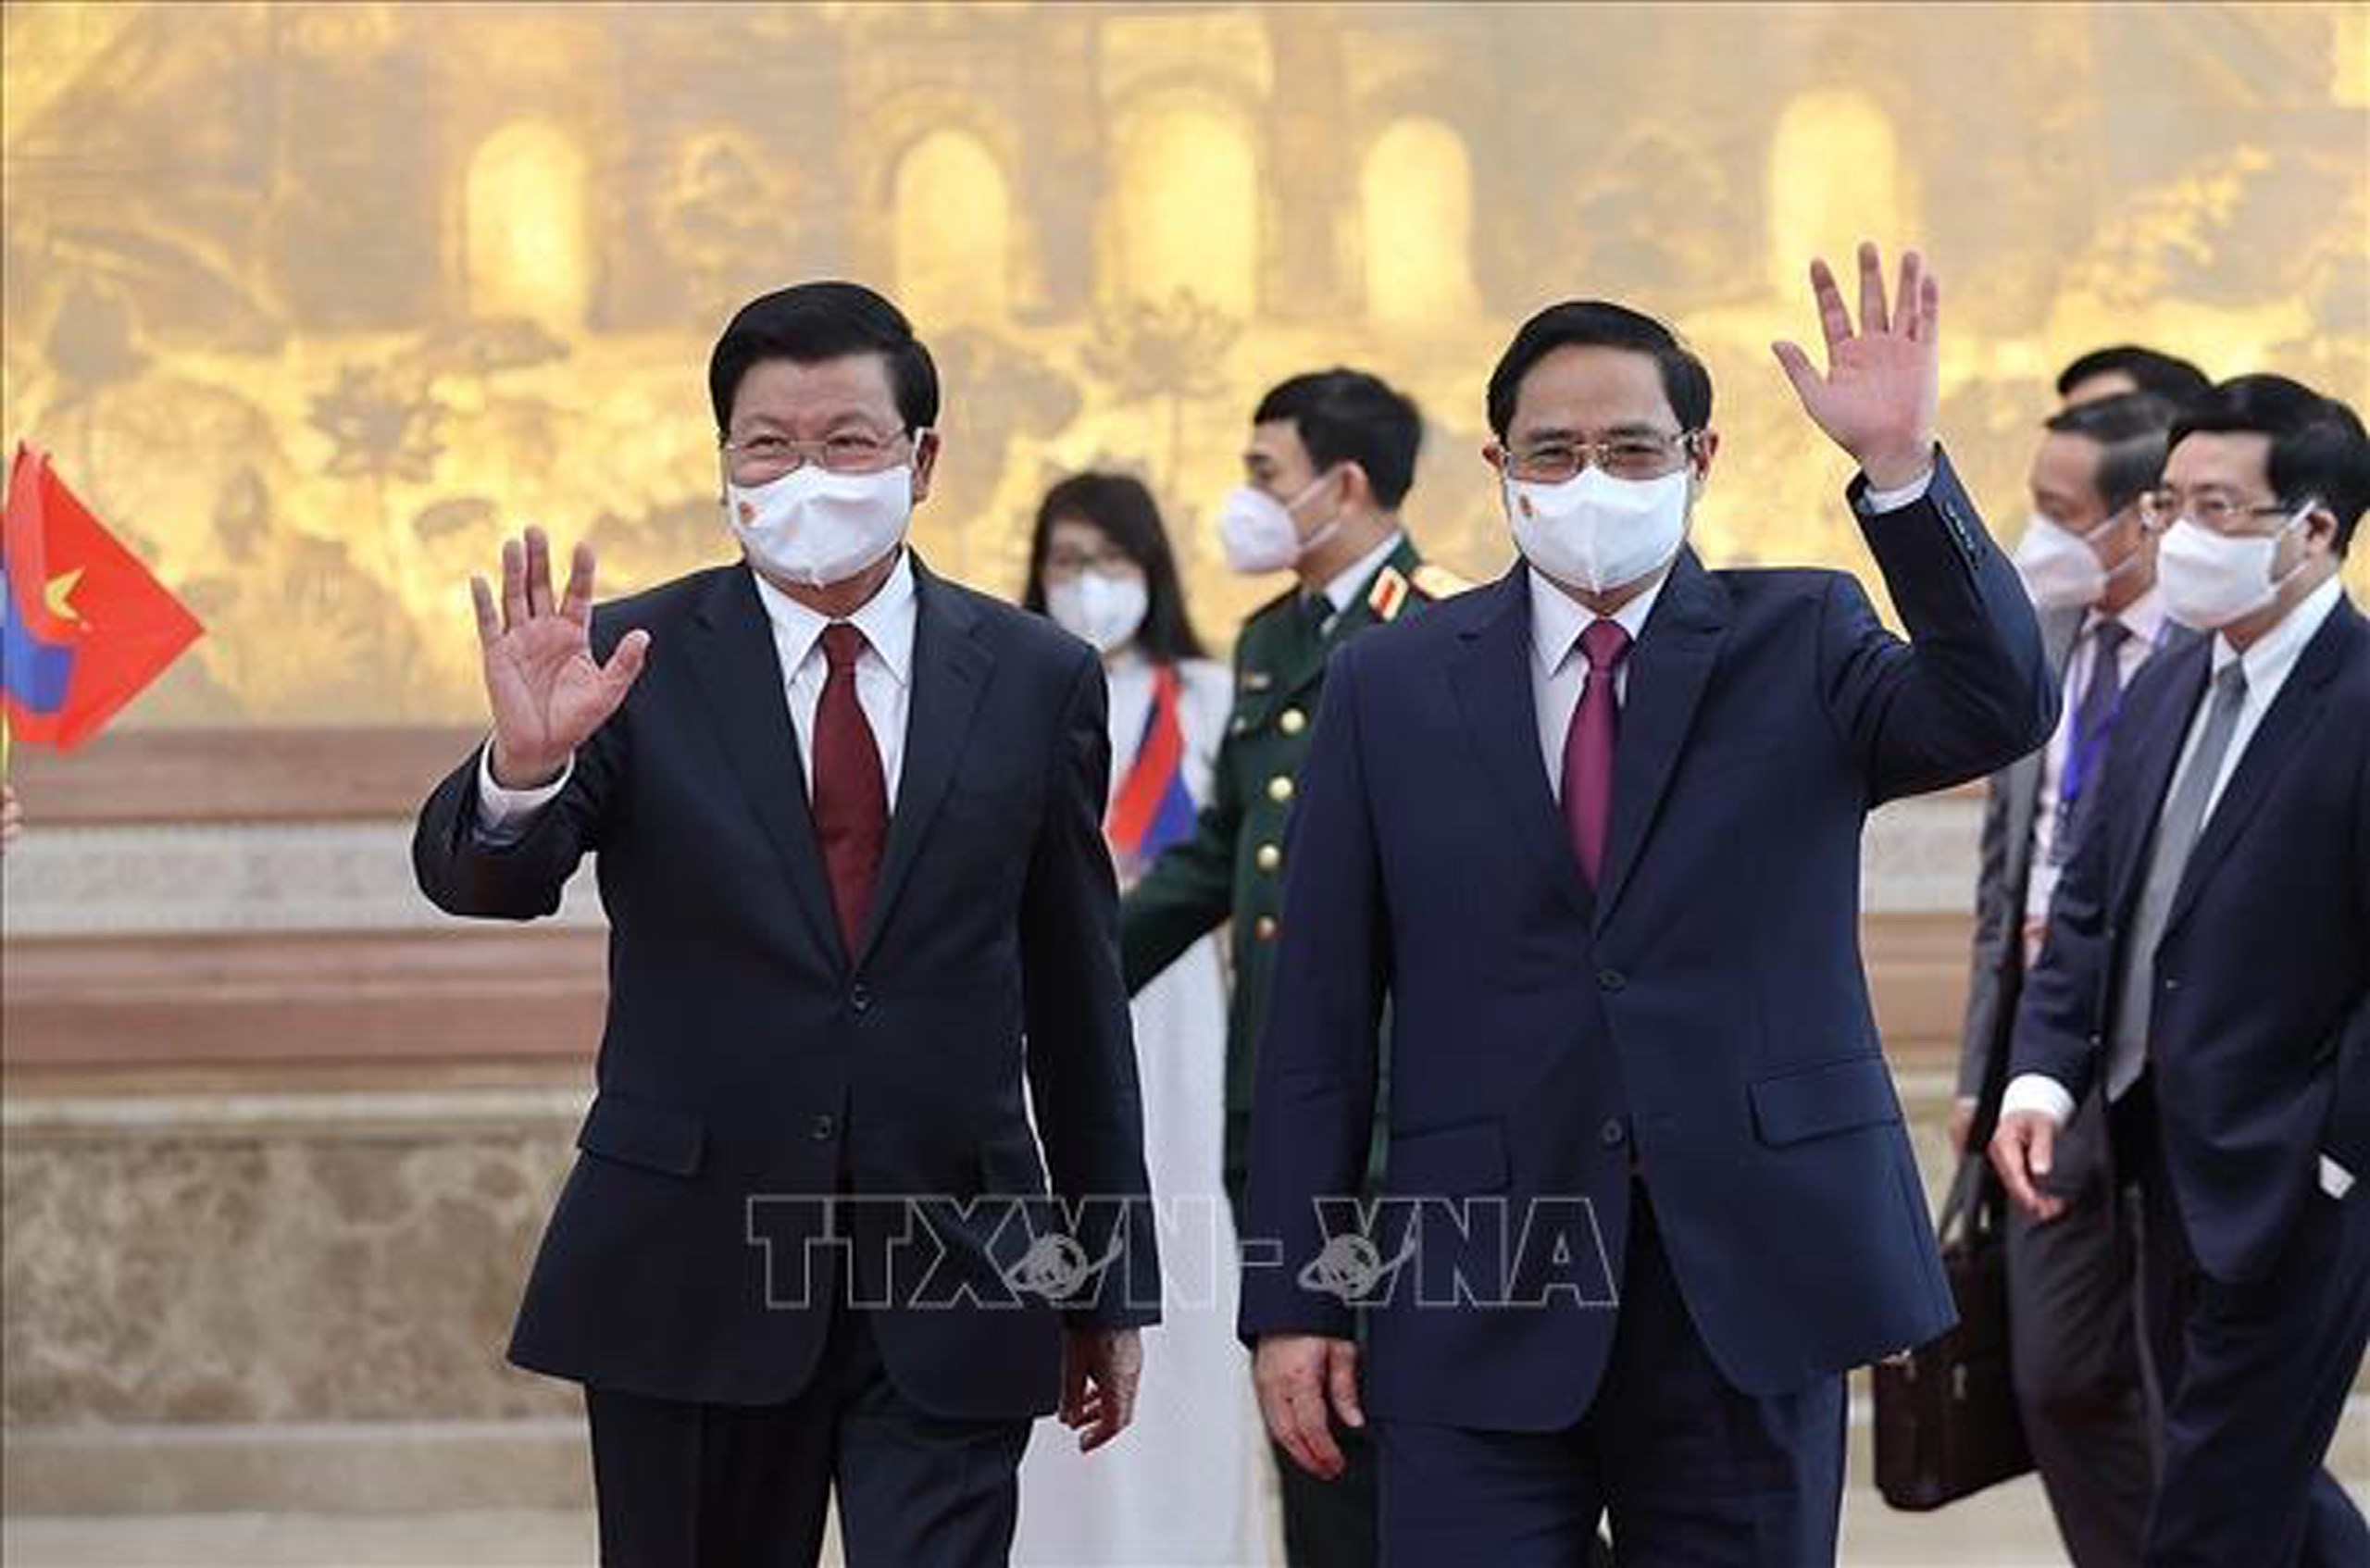 Премьер-министр Фам Минь Тьинь имел встречу с Тонглуном Сисулитом - Торжественныи прием в честь лаосского руководителя hinh anh 1